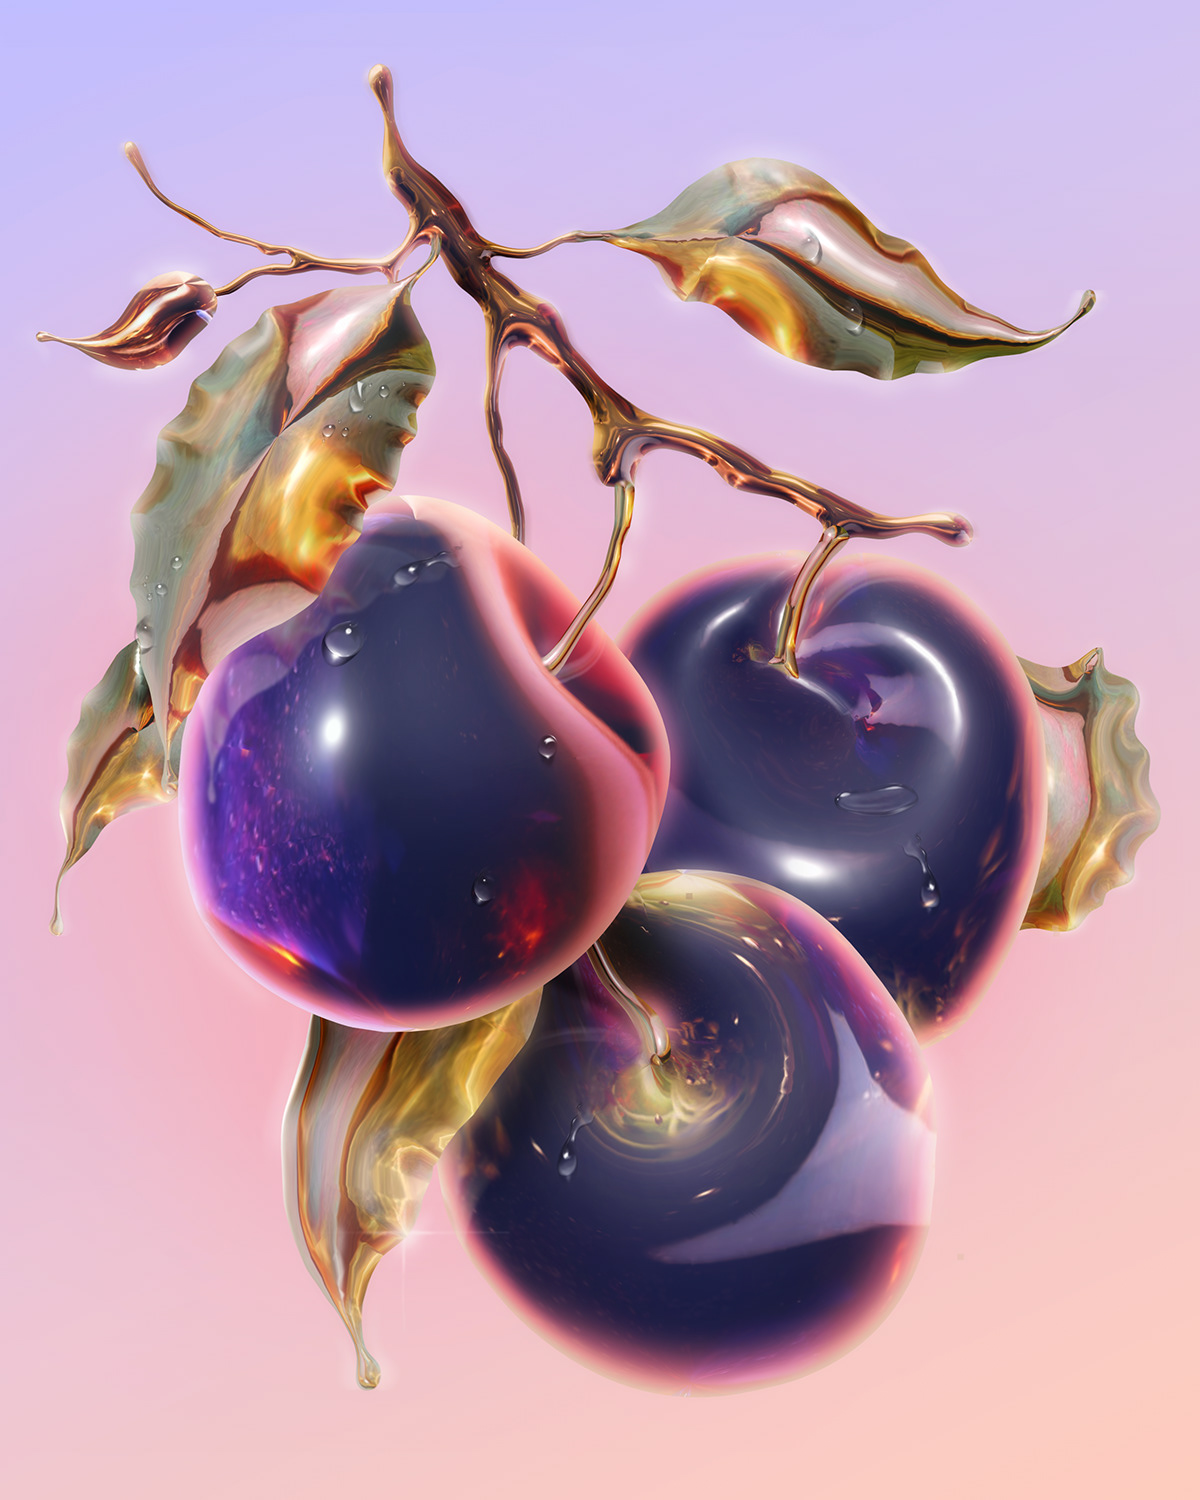 3D 3d cherry 3d fruits cheery Digital Art  Fruit fruit composition GOLD FRUIT Plum still life 3d